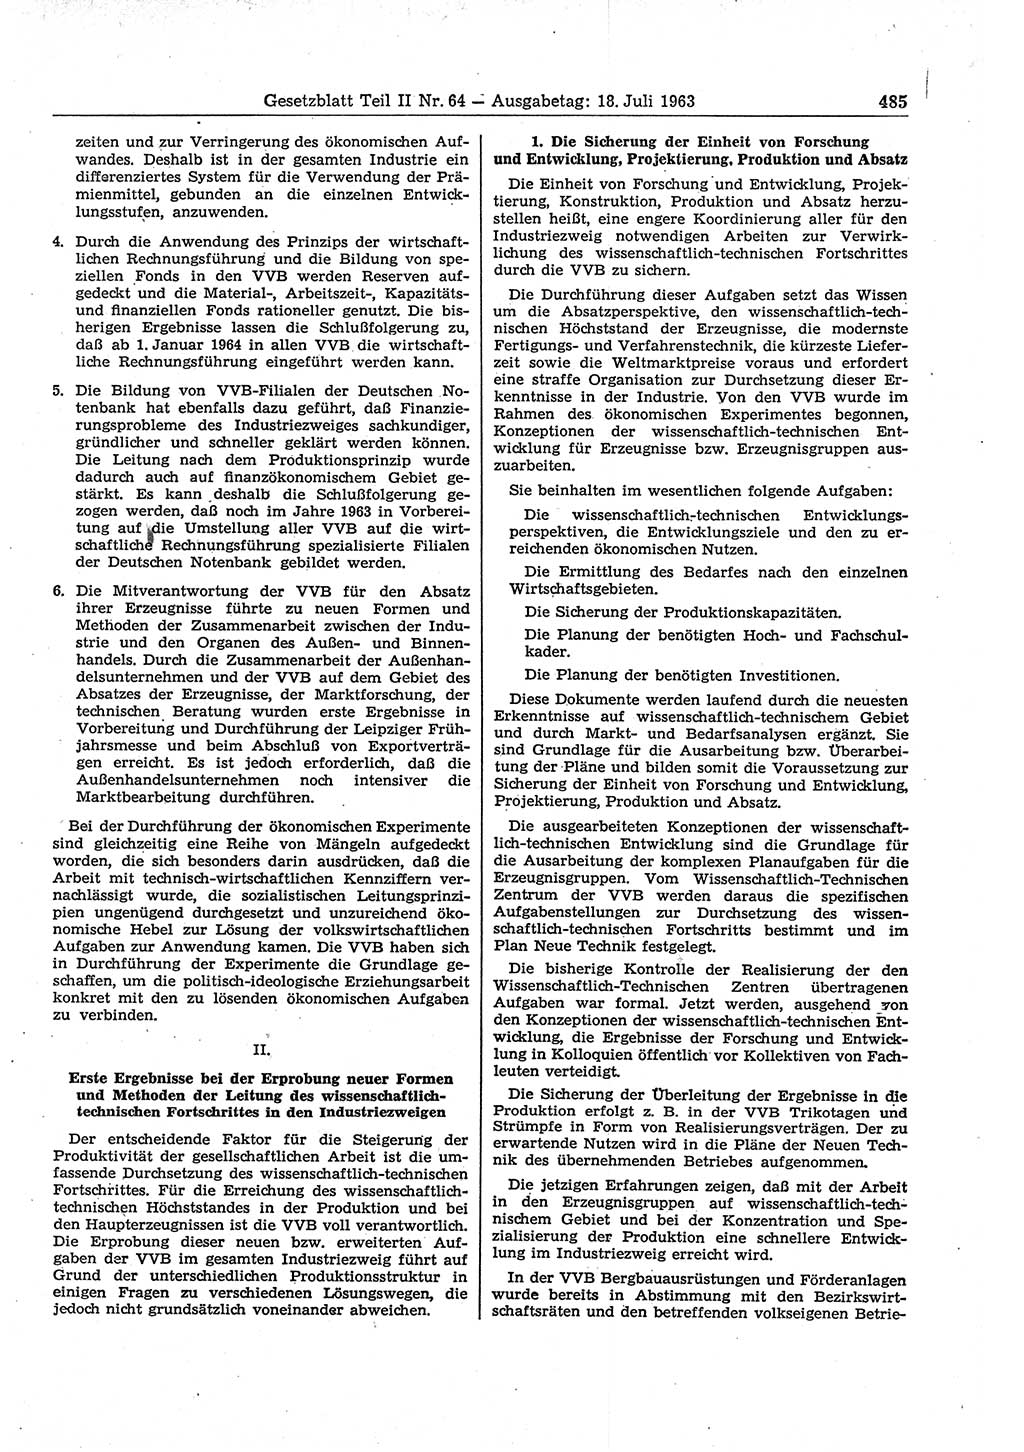 Gesetzblatt (GBl.) der Deutschen Demokratischen Republik (DDR) Teil ⅠⅠ 1963, Seite 485 (GBl. DDR ⅠⅠ 1963, S. 485)